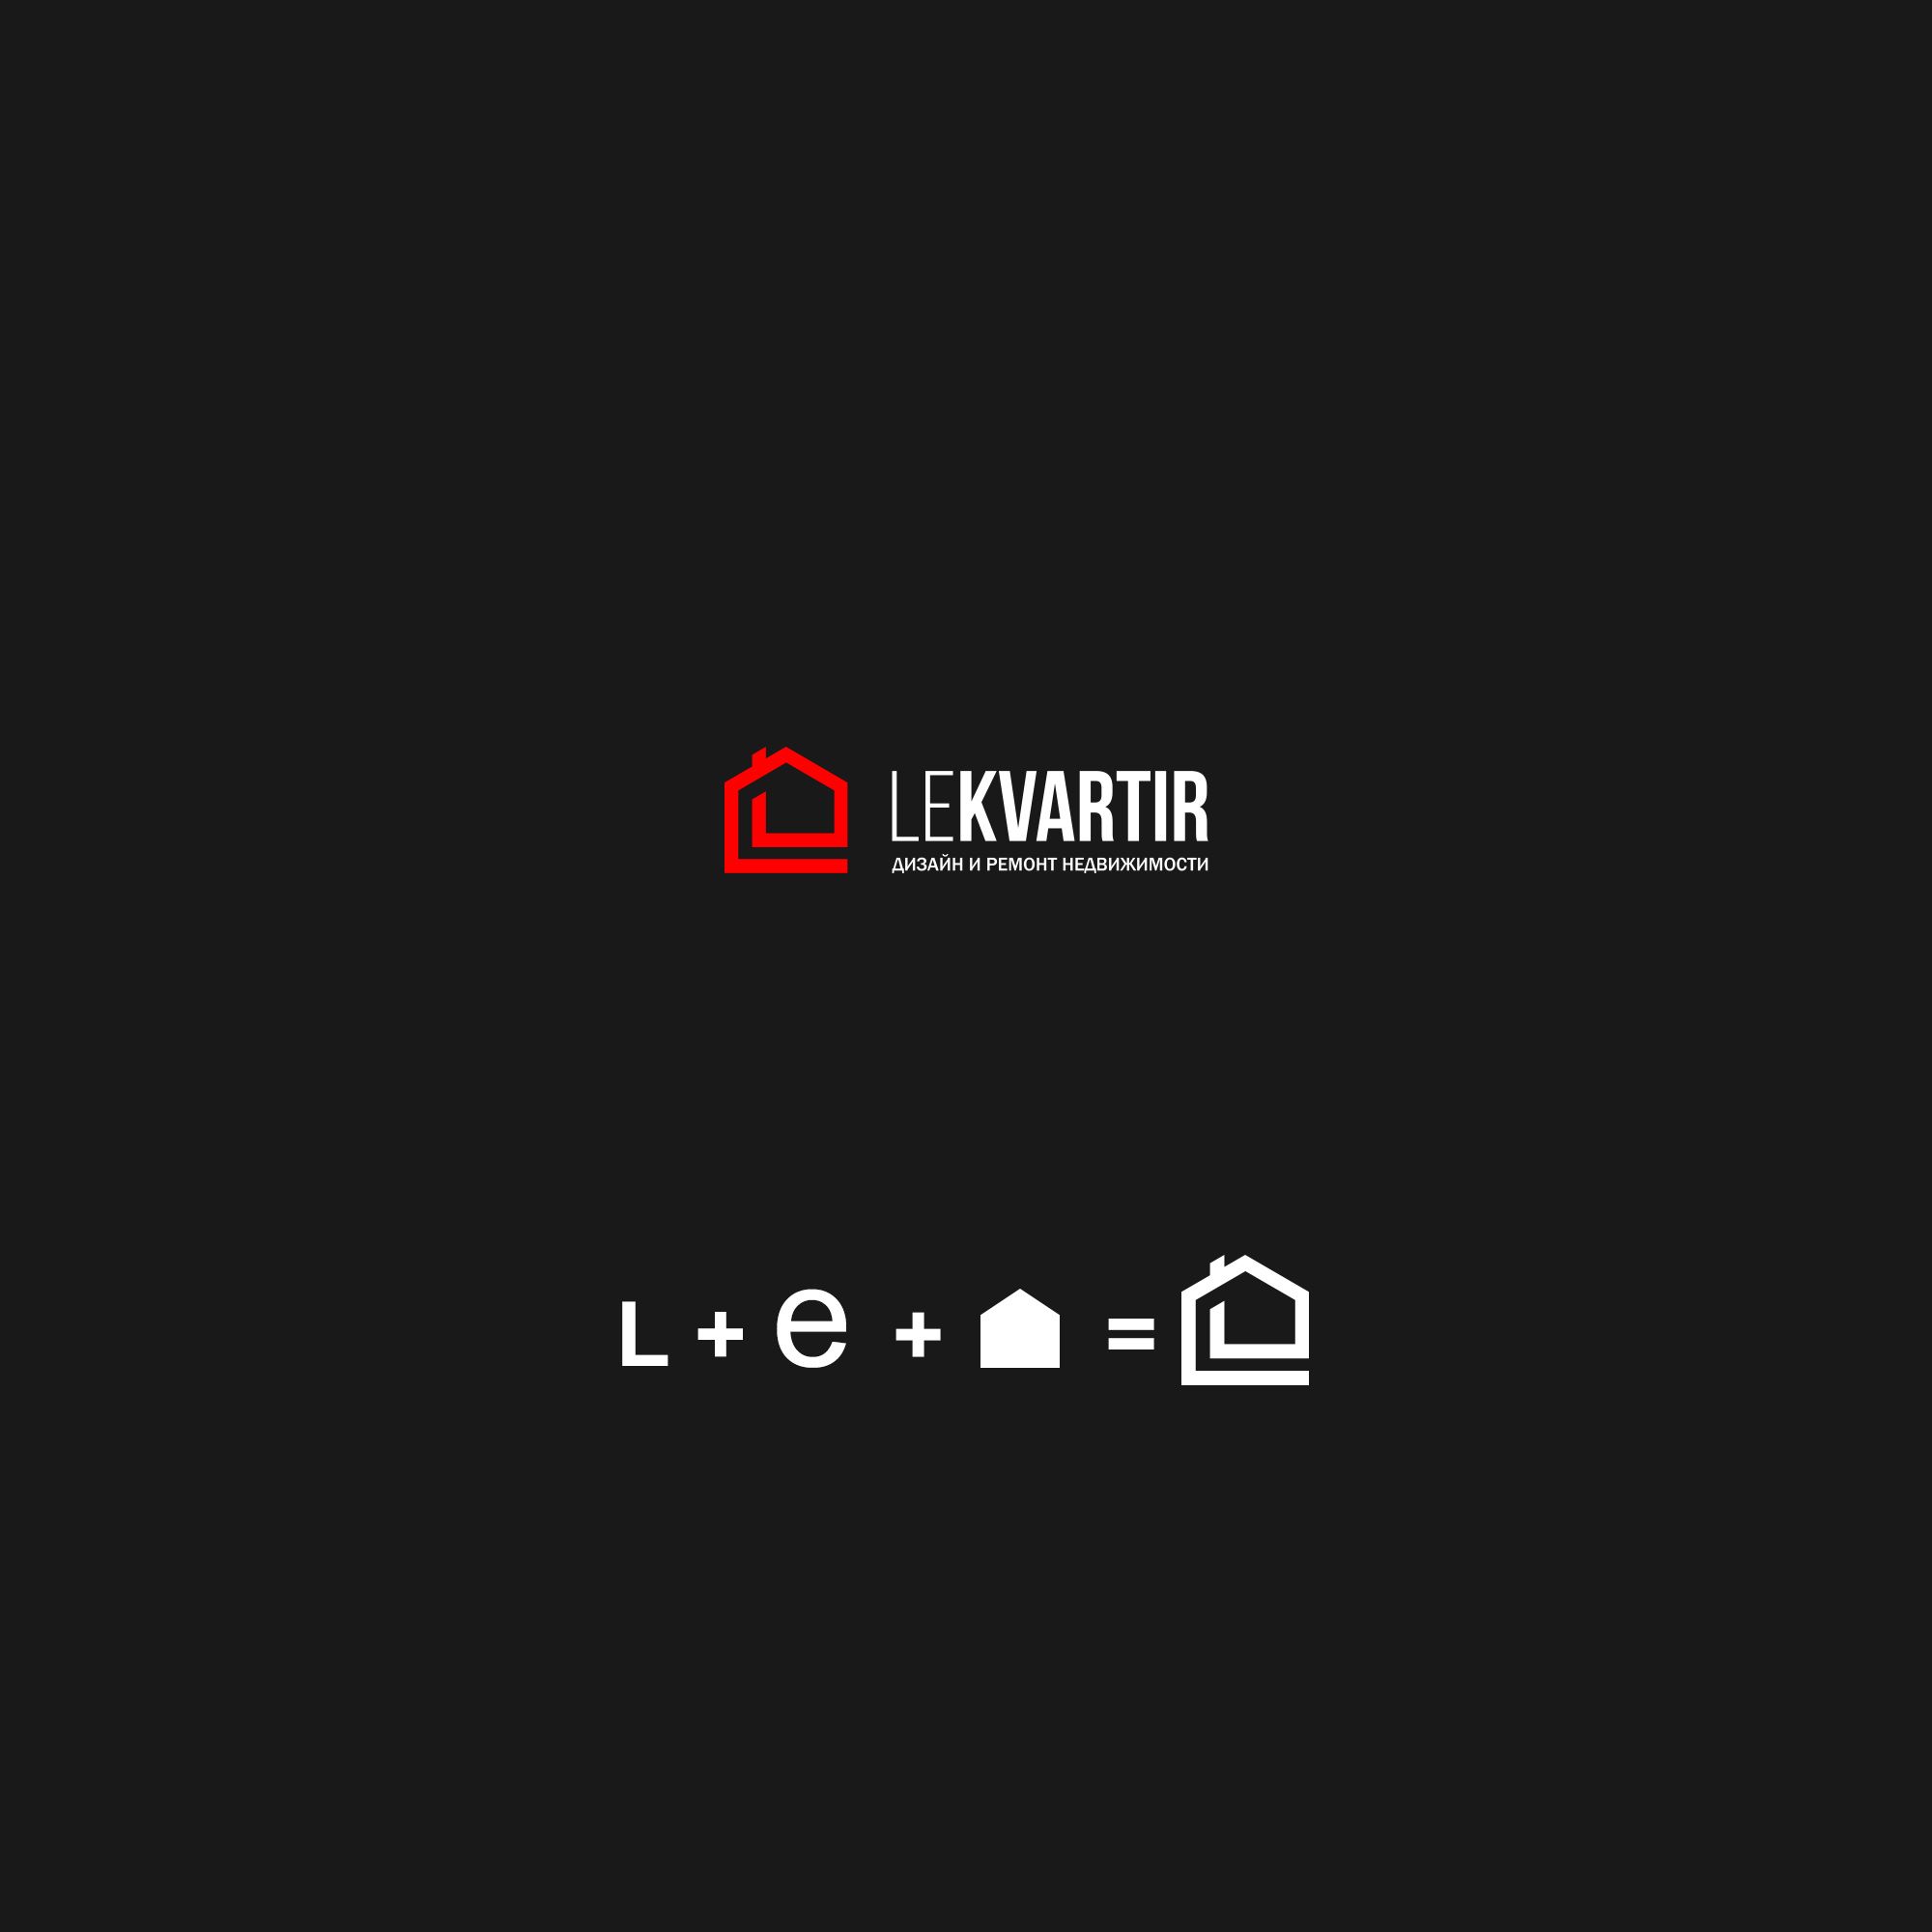 Лого и фирменный стиль для Ле Квартир - дизайнер weste32